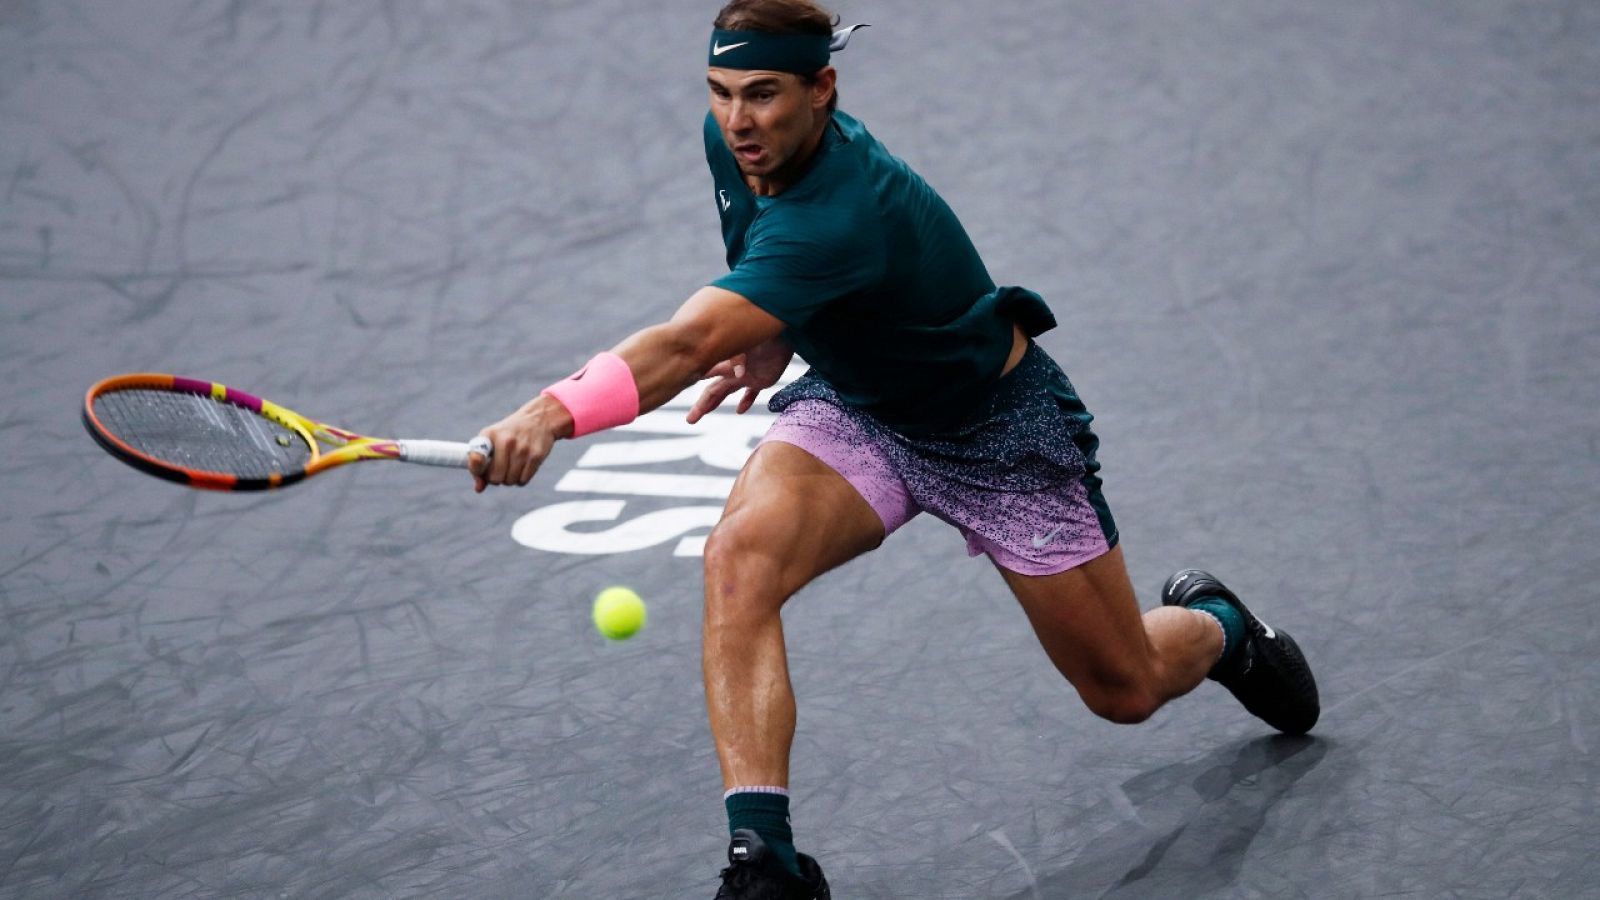 Imagen de Rafa Nadal en su partido ante Jordan Thompson en los octavos de final del Masters 1000 de París.